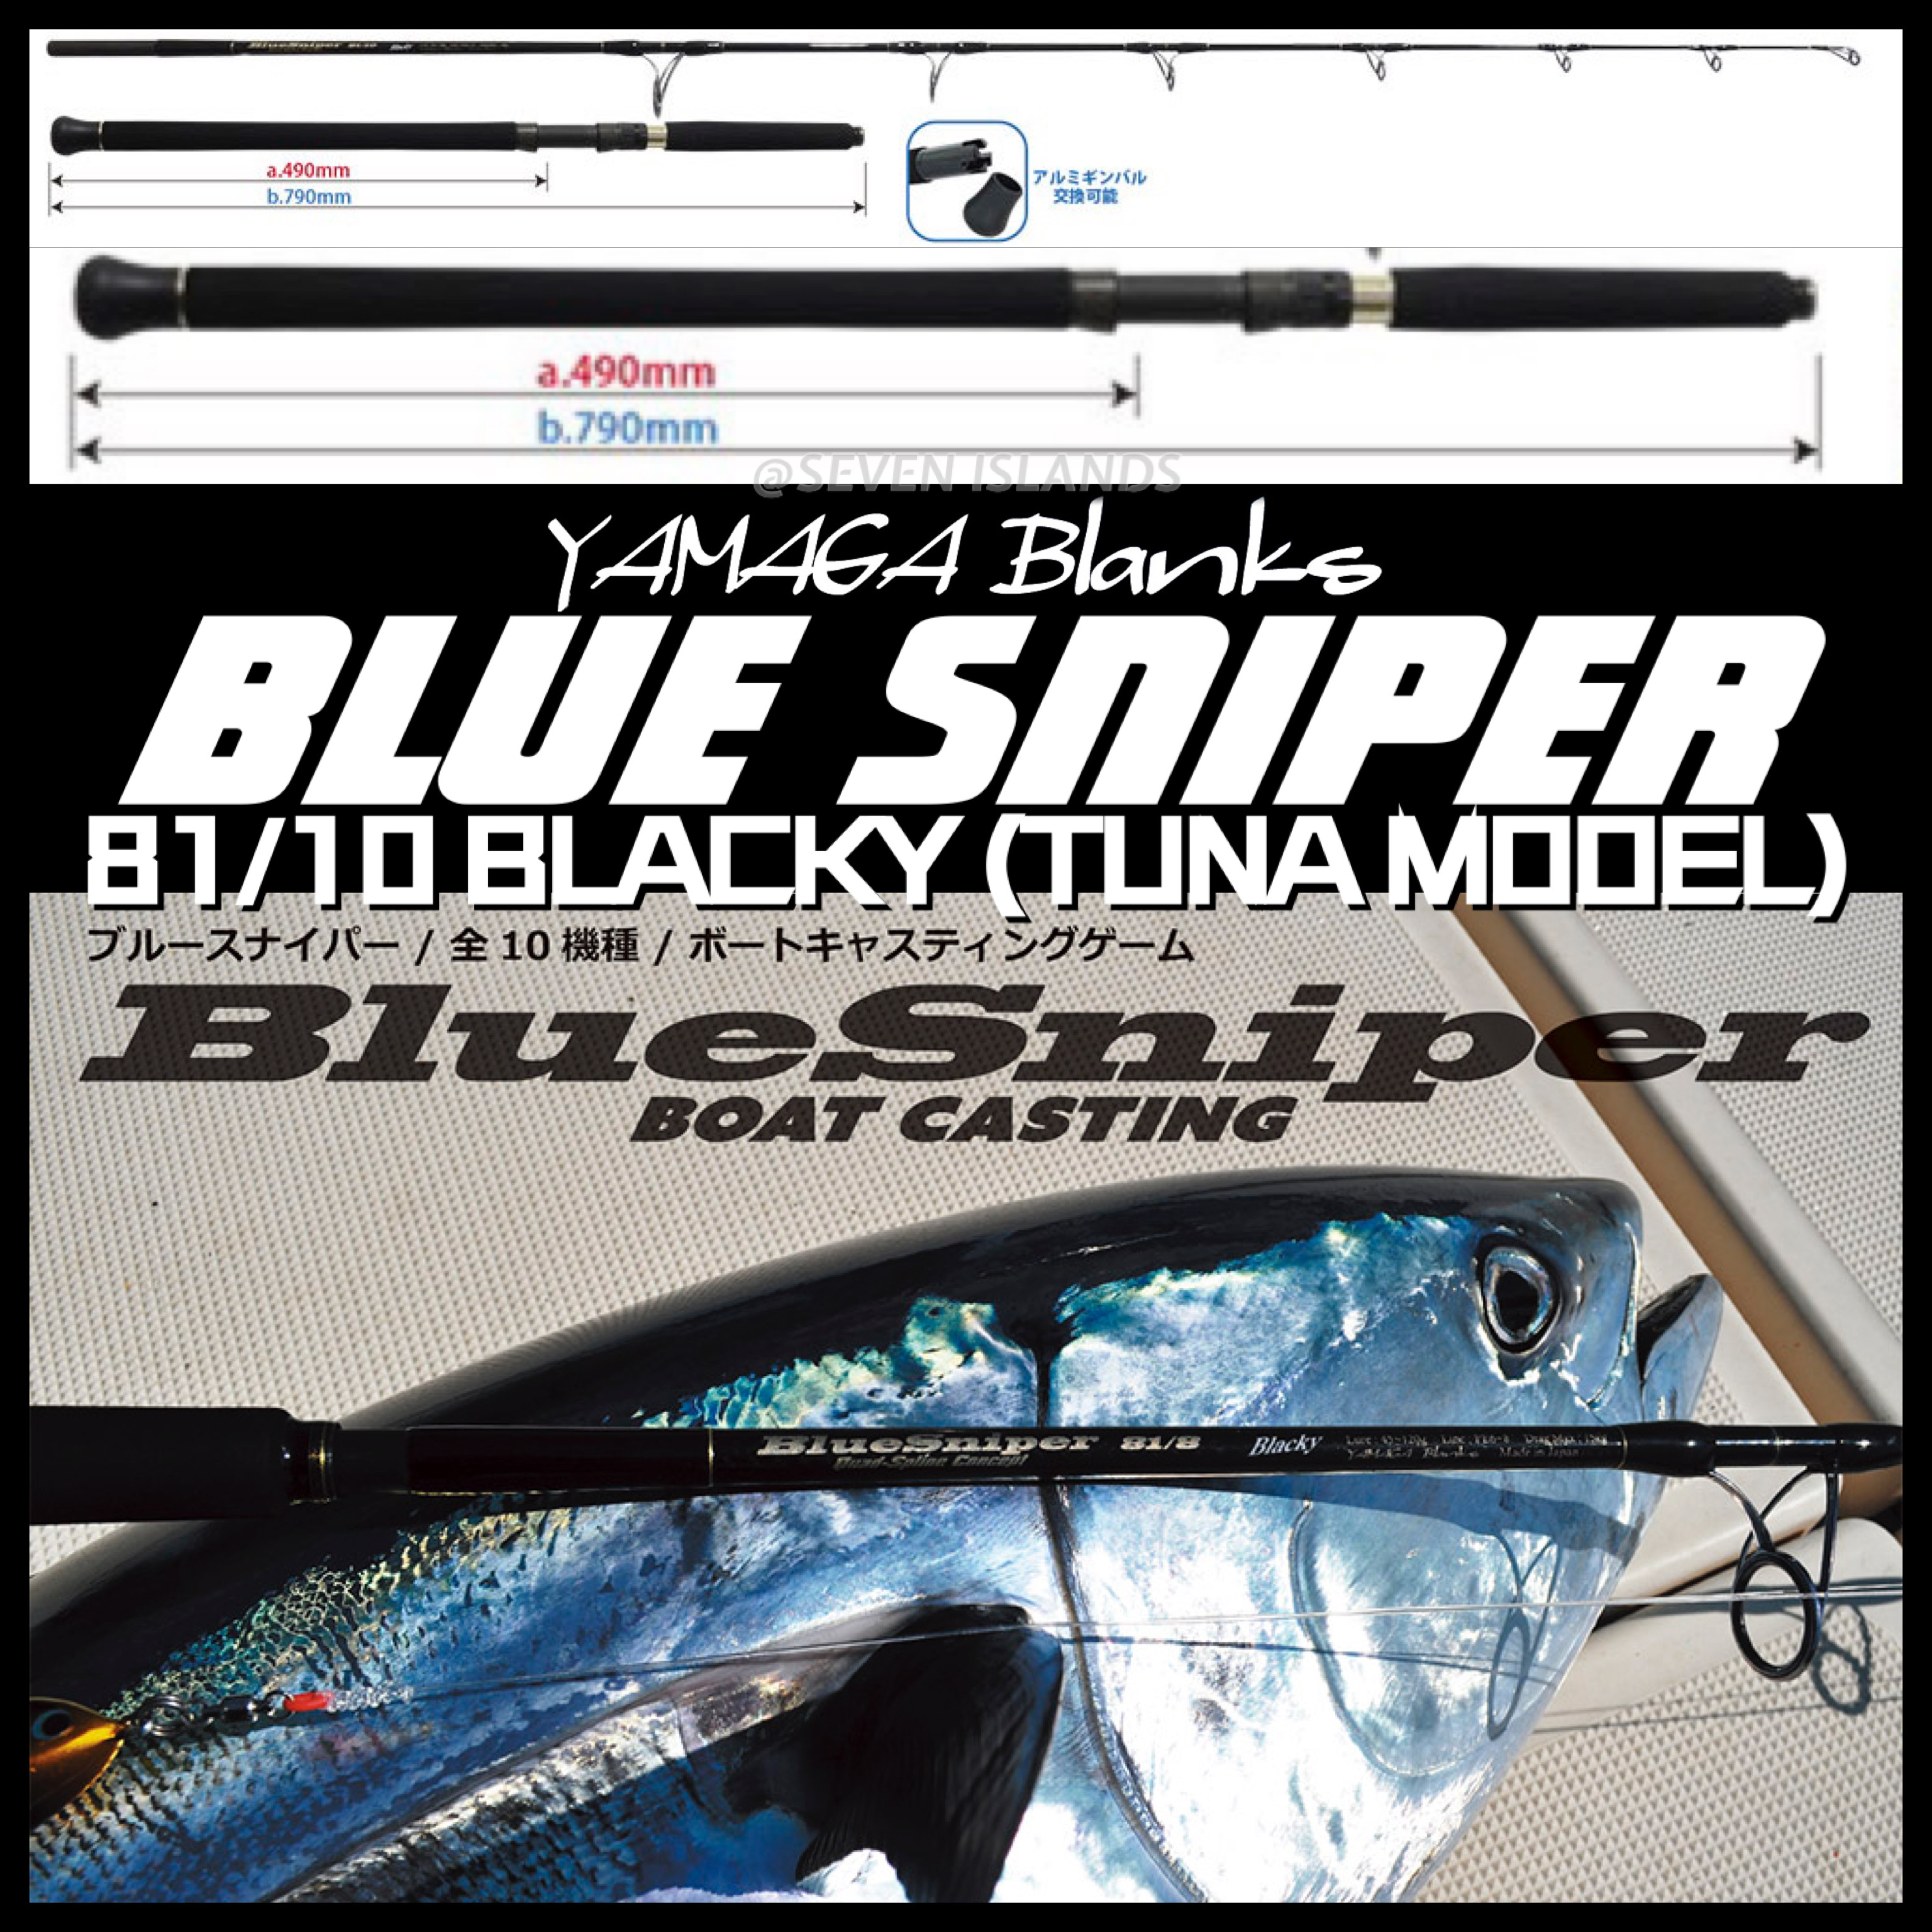 ヤマガブランクス BLUE SNIPER 81/6 Blacky-